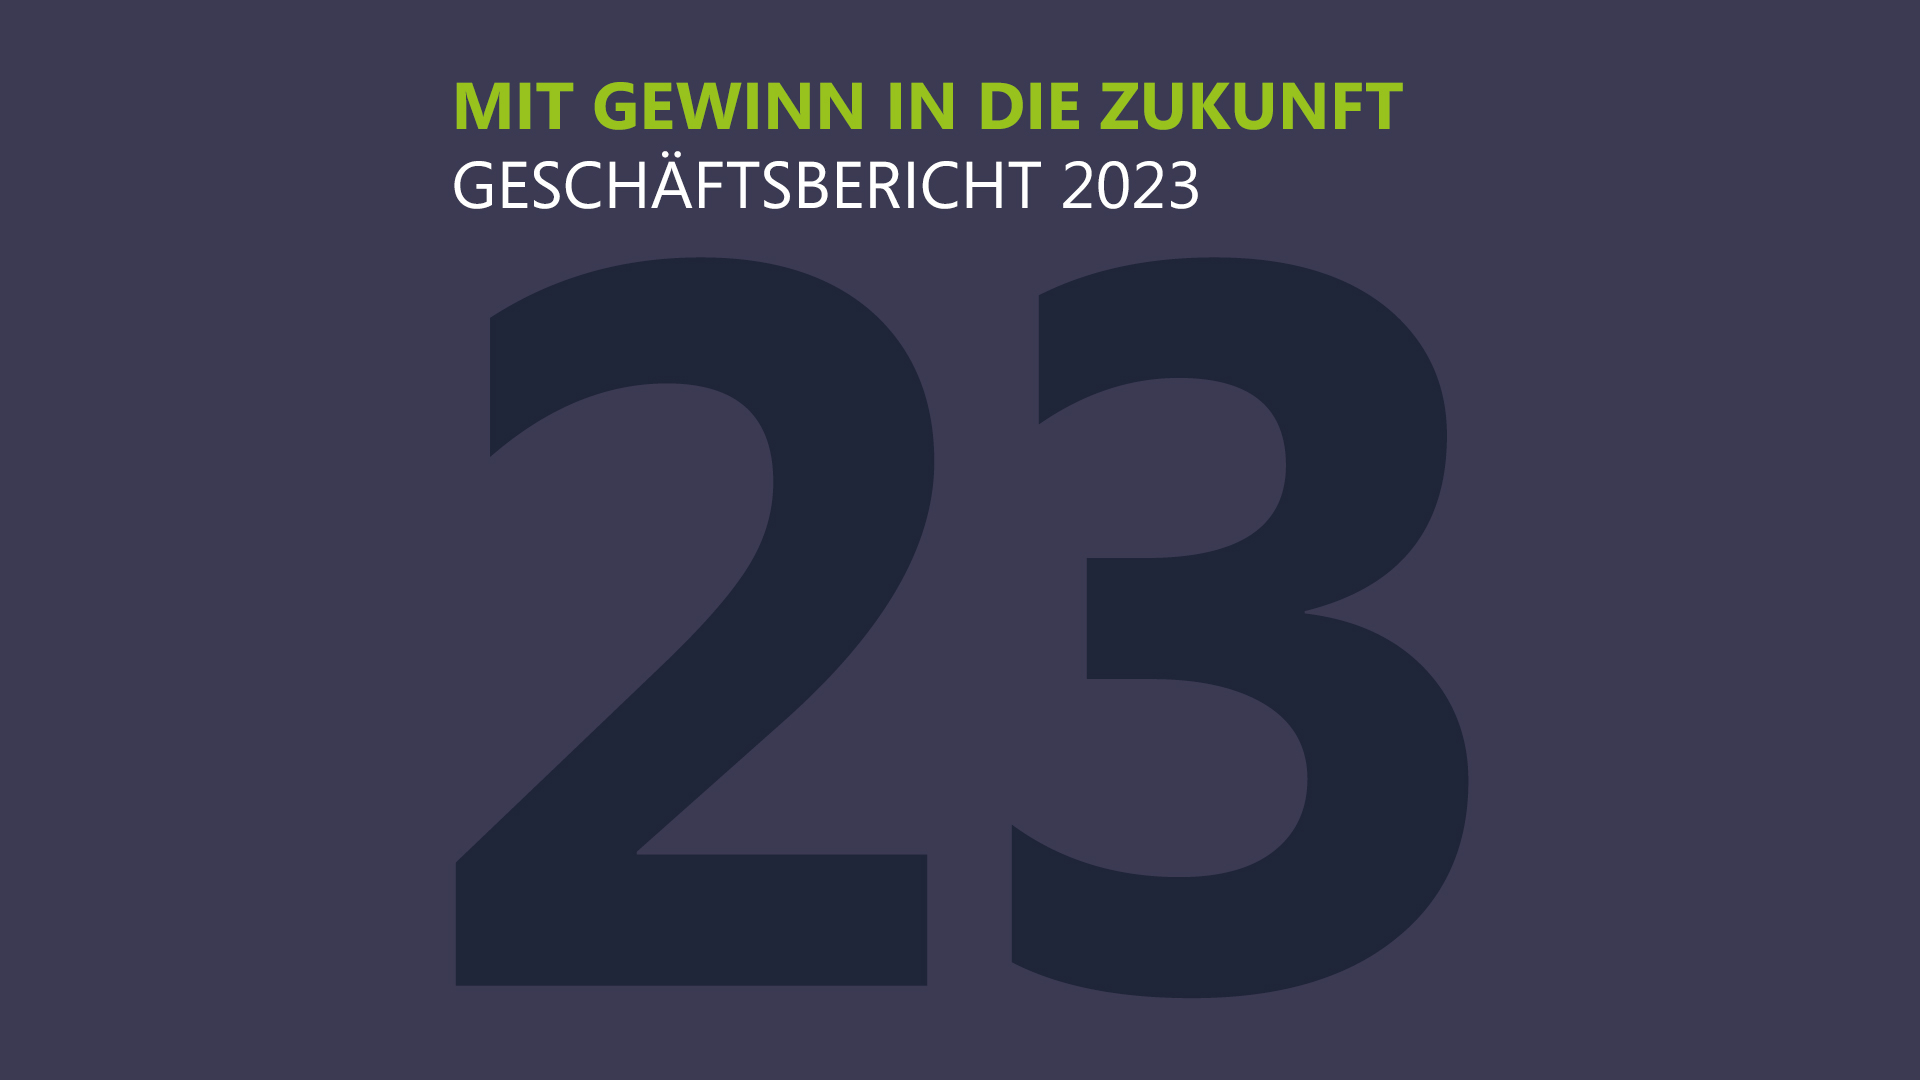 Verso il futuro con profitto - Rapporto di gestione 2023